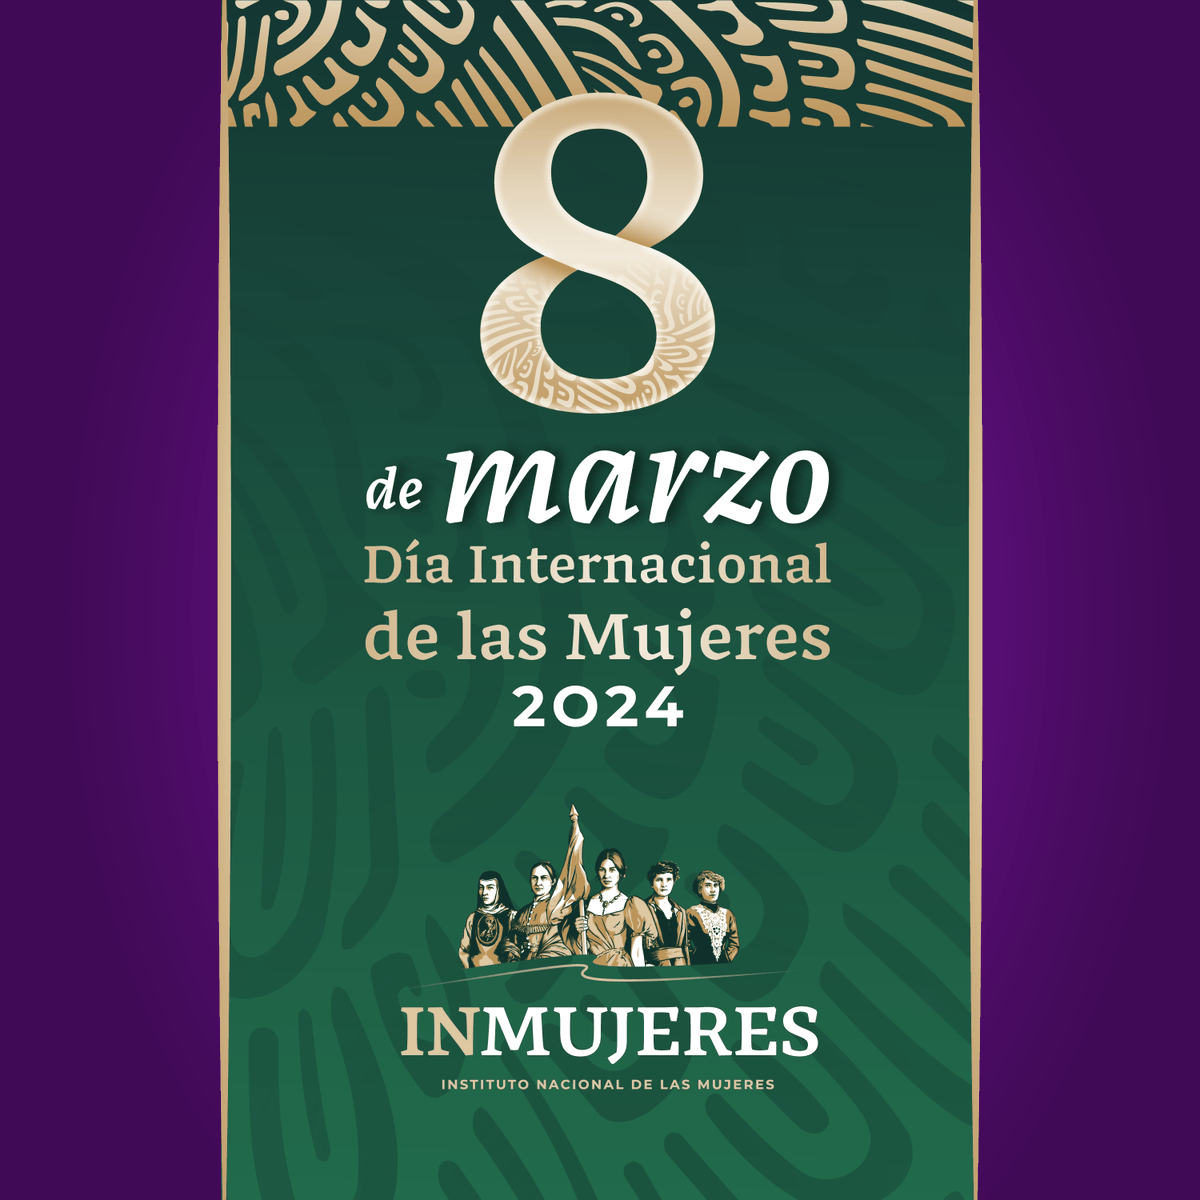 Hoy conmemoramos el #DíaInternacionalDeLasMujeres, para reconocer su lucha por un mundo con igualdad de derechos, libre de violencia y discriminación hacia ellas. #JuntasPorLaIgualdad #JuntasPorMéxico